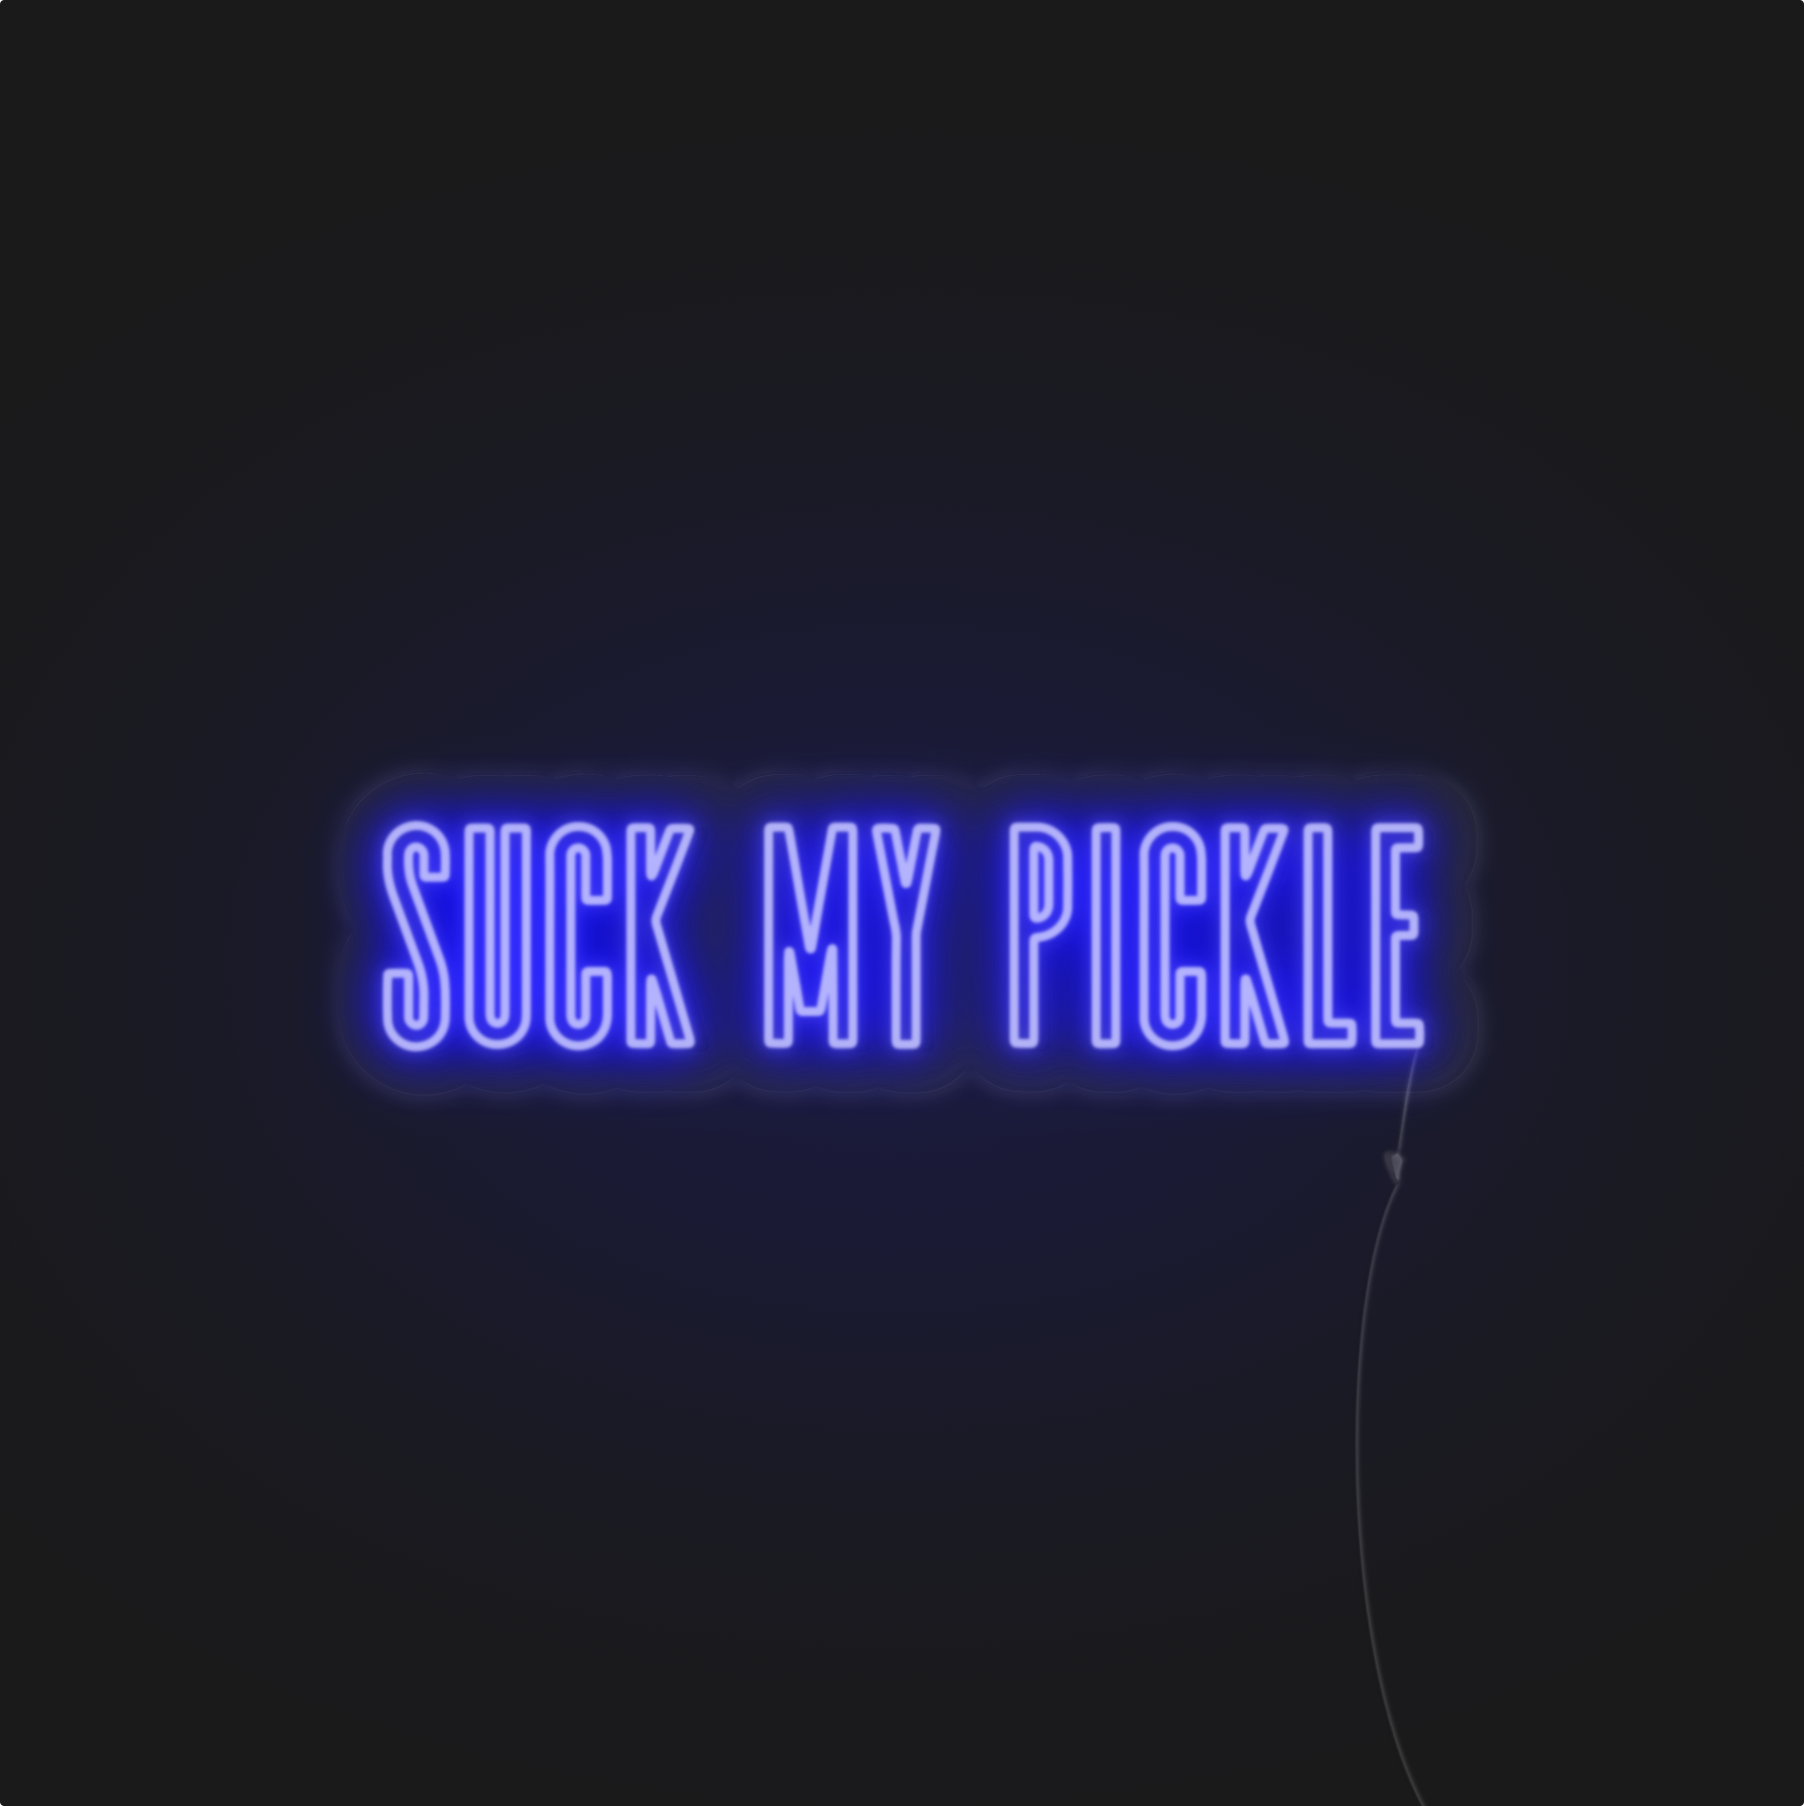 Suck my pickle neonerdy.design